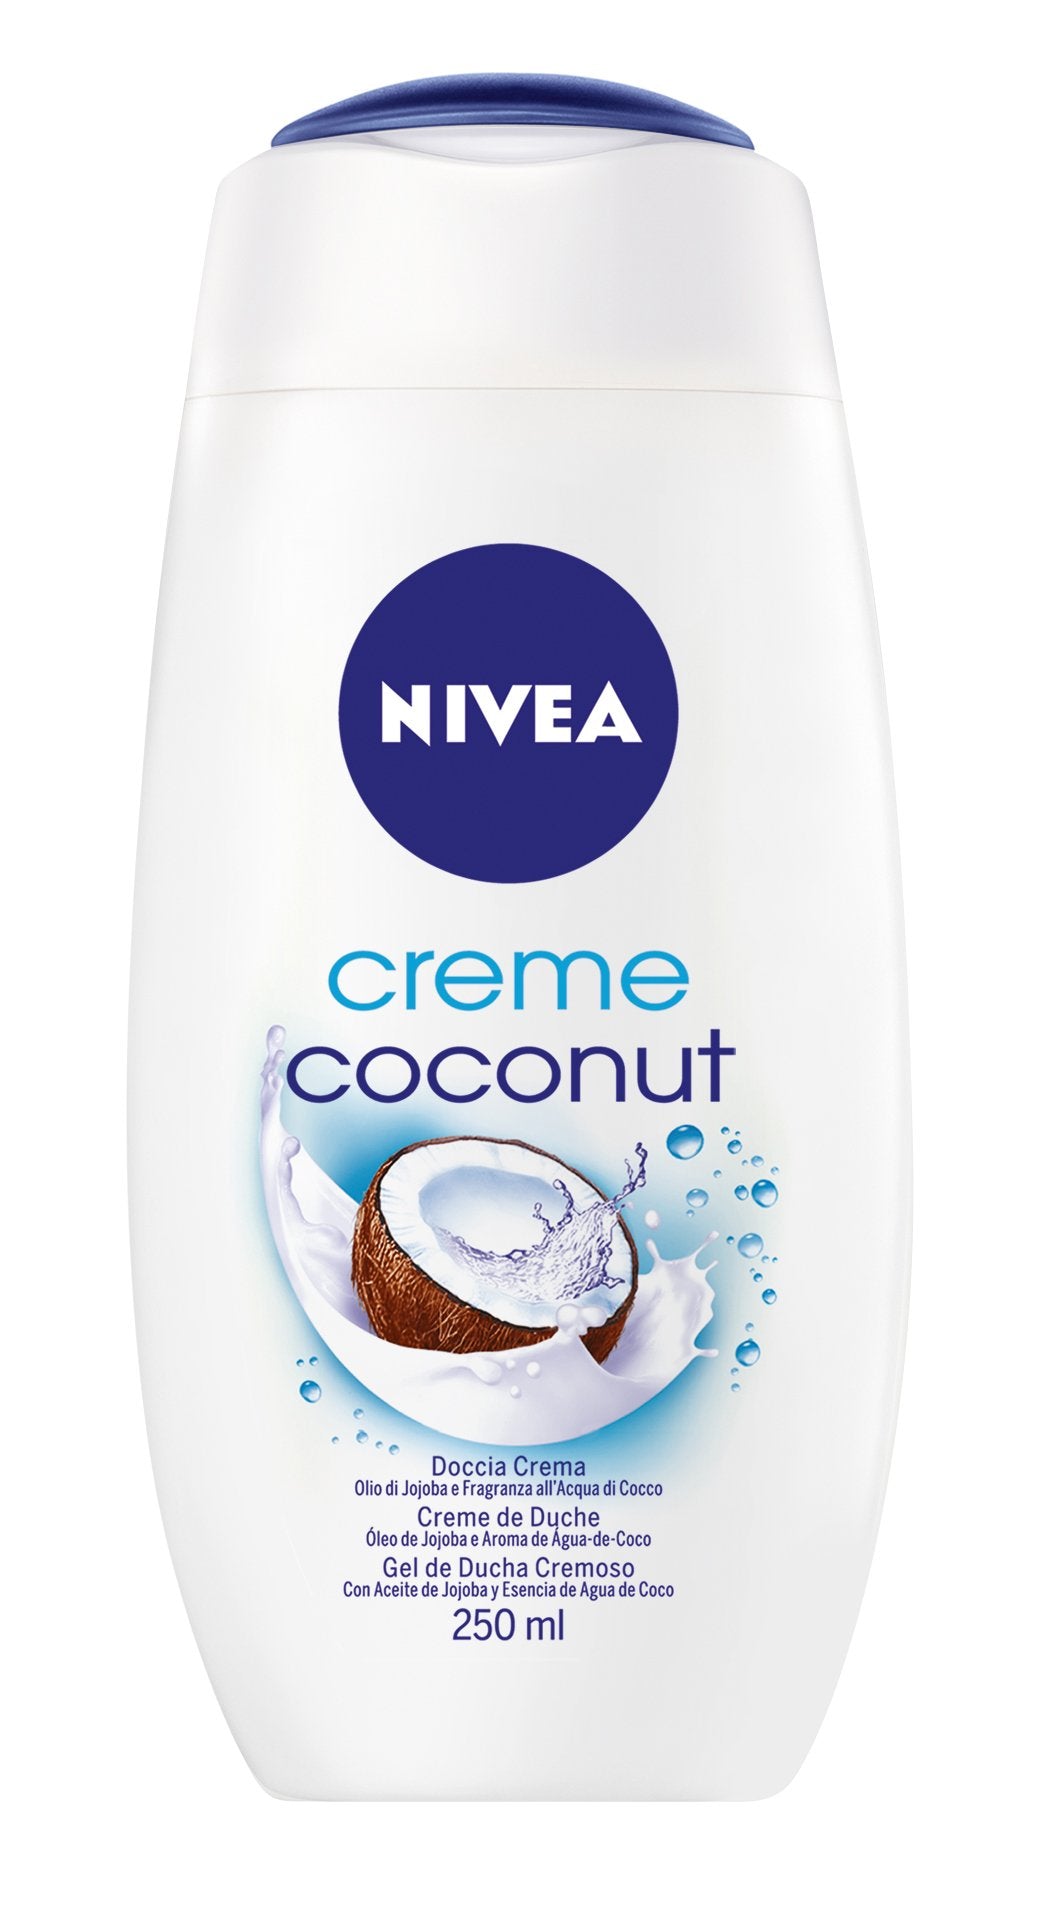 Nivea Creme Coconut Shower Cream 250ml